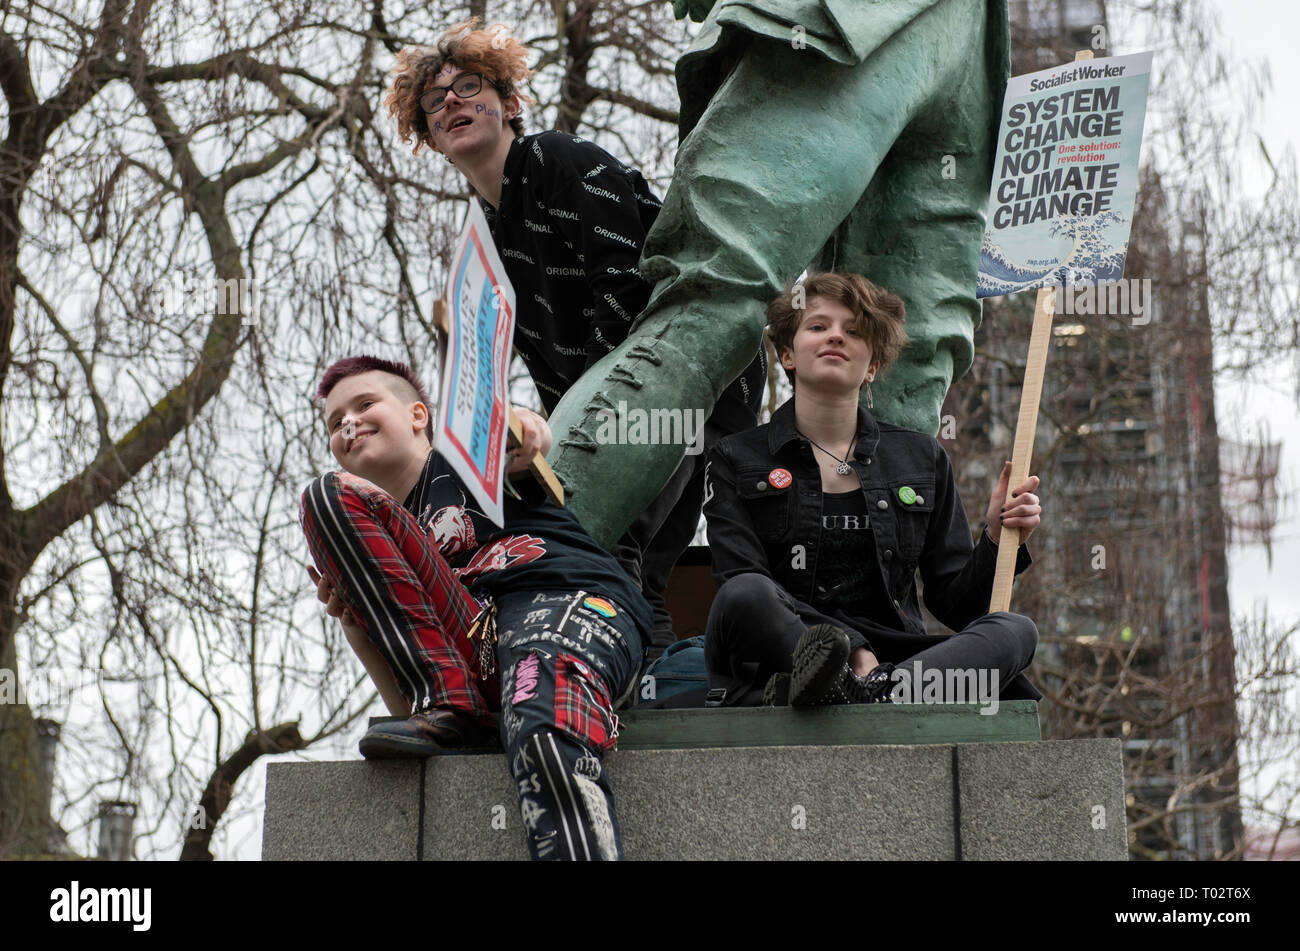 Jugendliche sind mit Plakaten neben einer Skulptur am Parliament Square während des Protestes gesehen. Hunderte von jungen Menschen im Parlament Platz versammelt, das globale Klima Streik und fordern von der Regierung und der Politiker direkte Aktionen, die zur Bekämpfung des Klimawandels. Studenten in mehr als 100 Ländern waren in den Straßen in einem Klima globale Streik zu beteiligen. Stockfoto